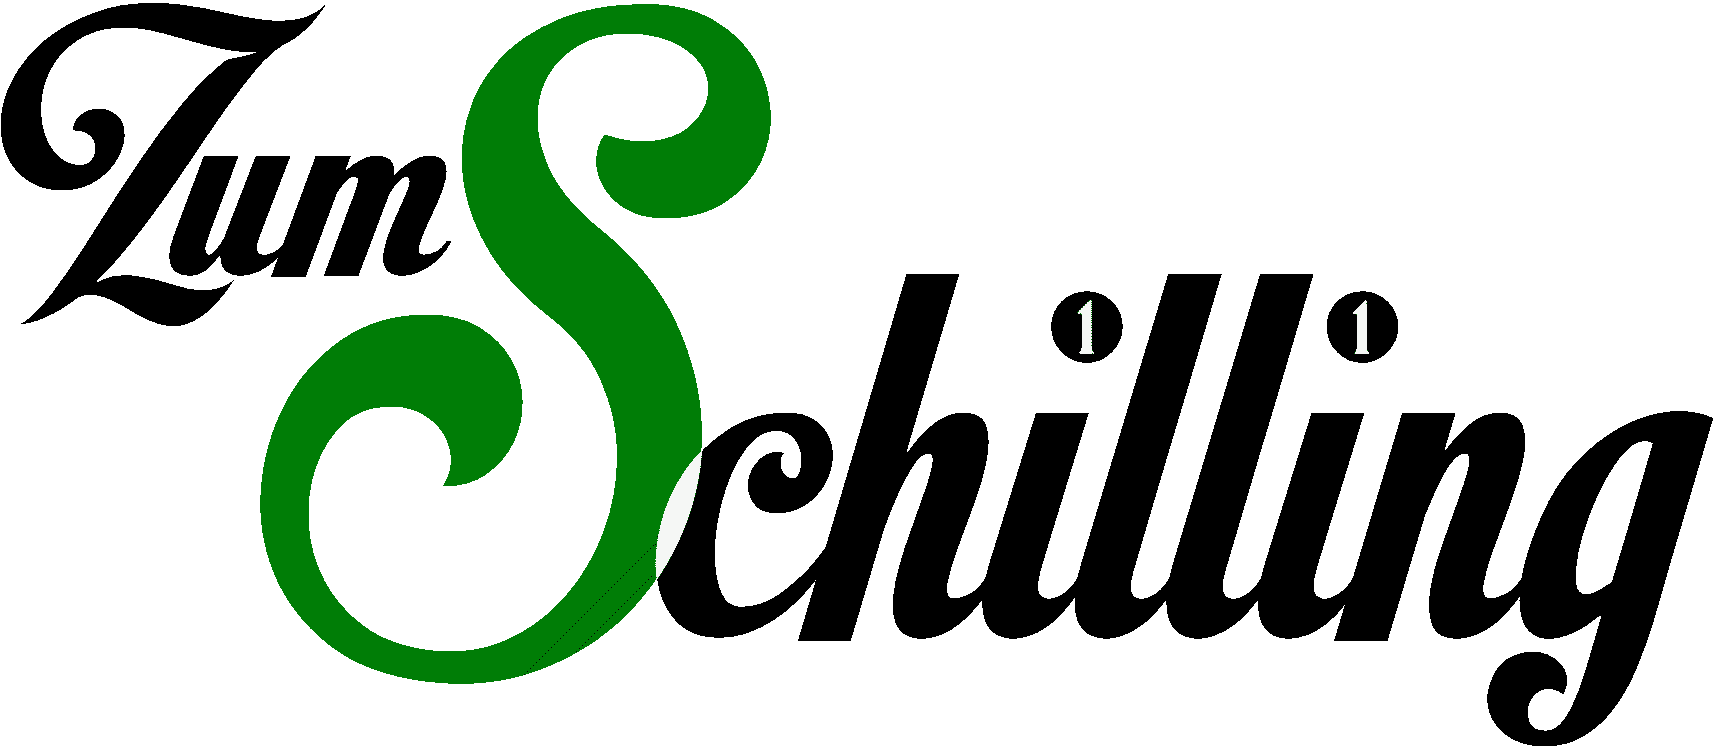 Zum Schilling Logo